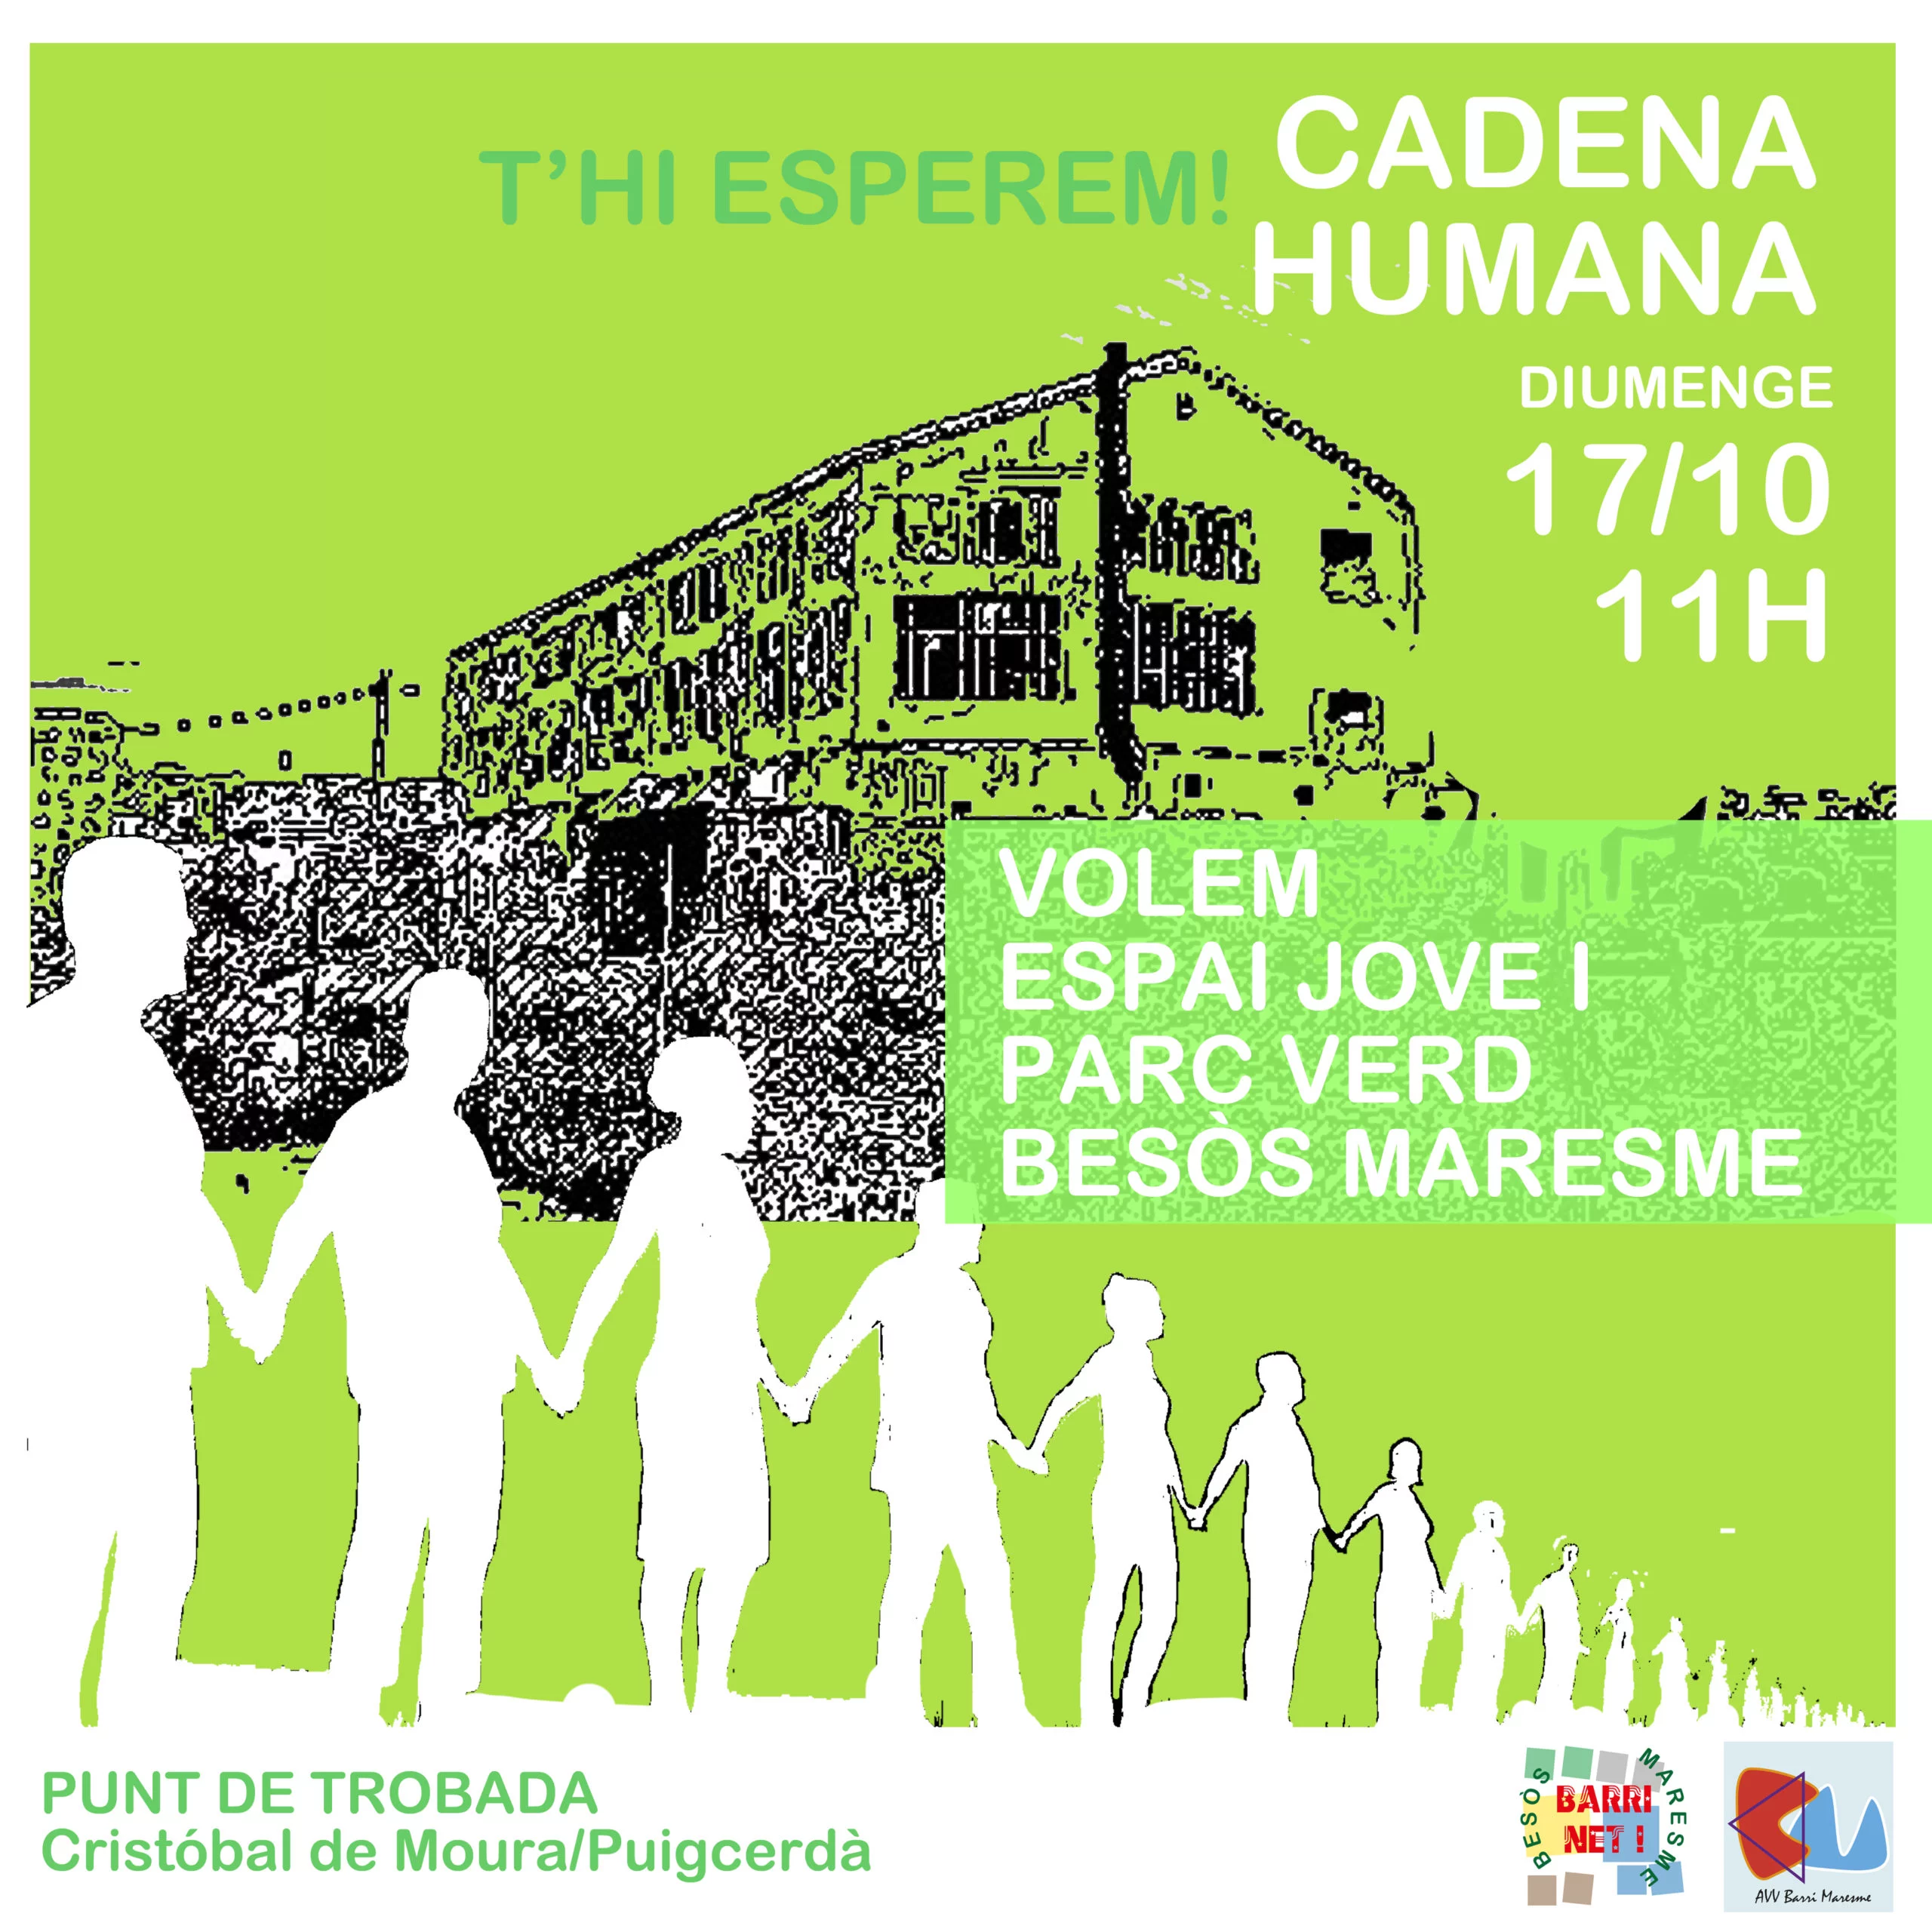 cadena humana maresme barcelona parc verd 2021 avv maresme forum